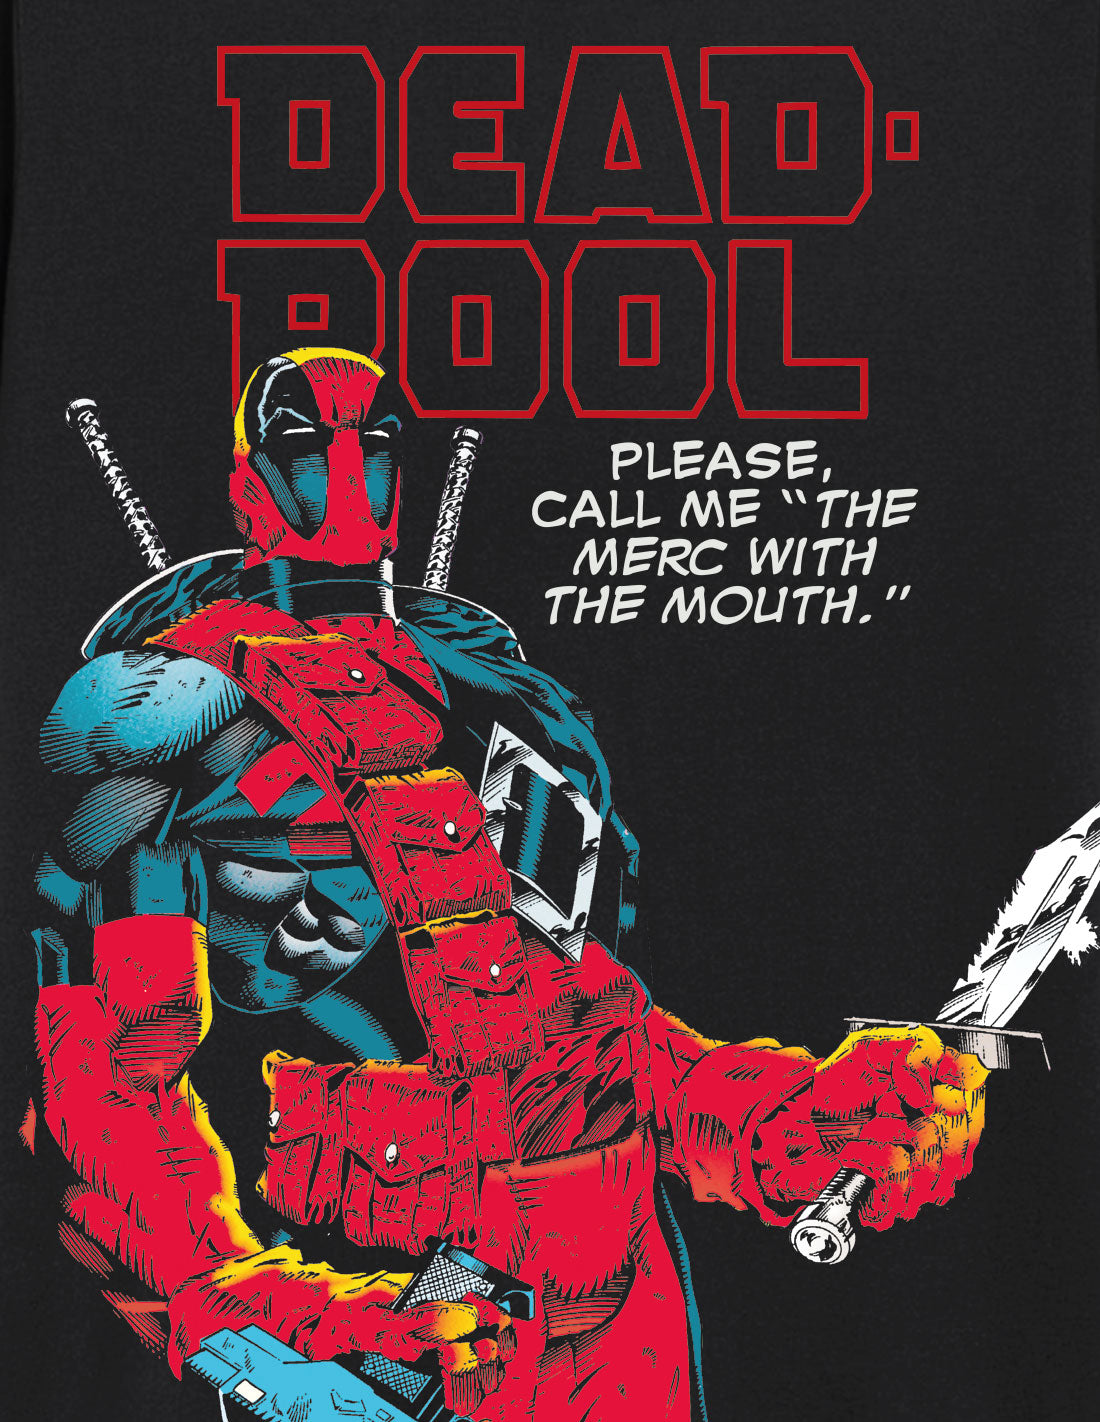 Marvel Oversized T-shirt - Deadpool - Call Me